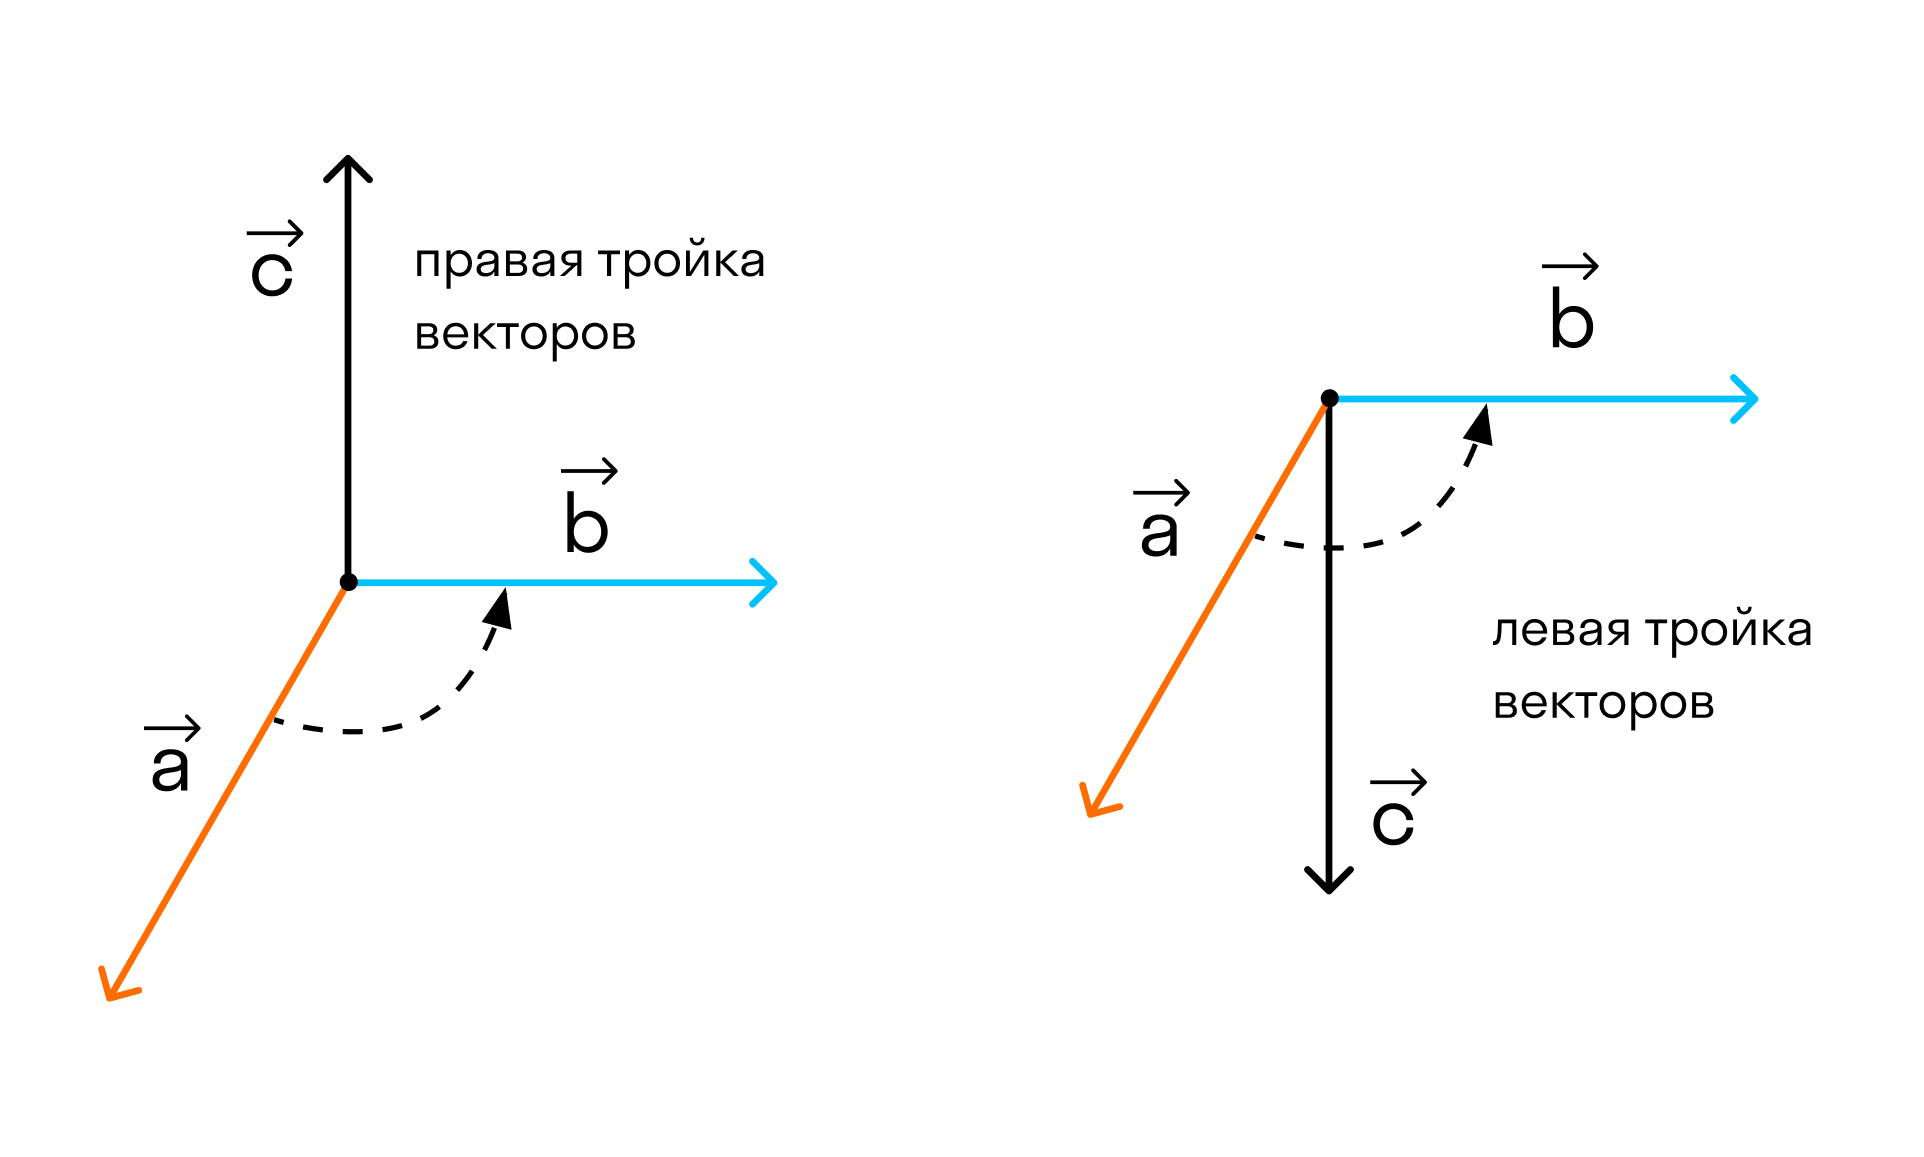 Правая левая тройка. Правая и левая тройка векторов. Левая тройка векторов. Правая (левая) тройка векторов (определение, как определить). Упорядоченная тройка векторов.